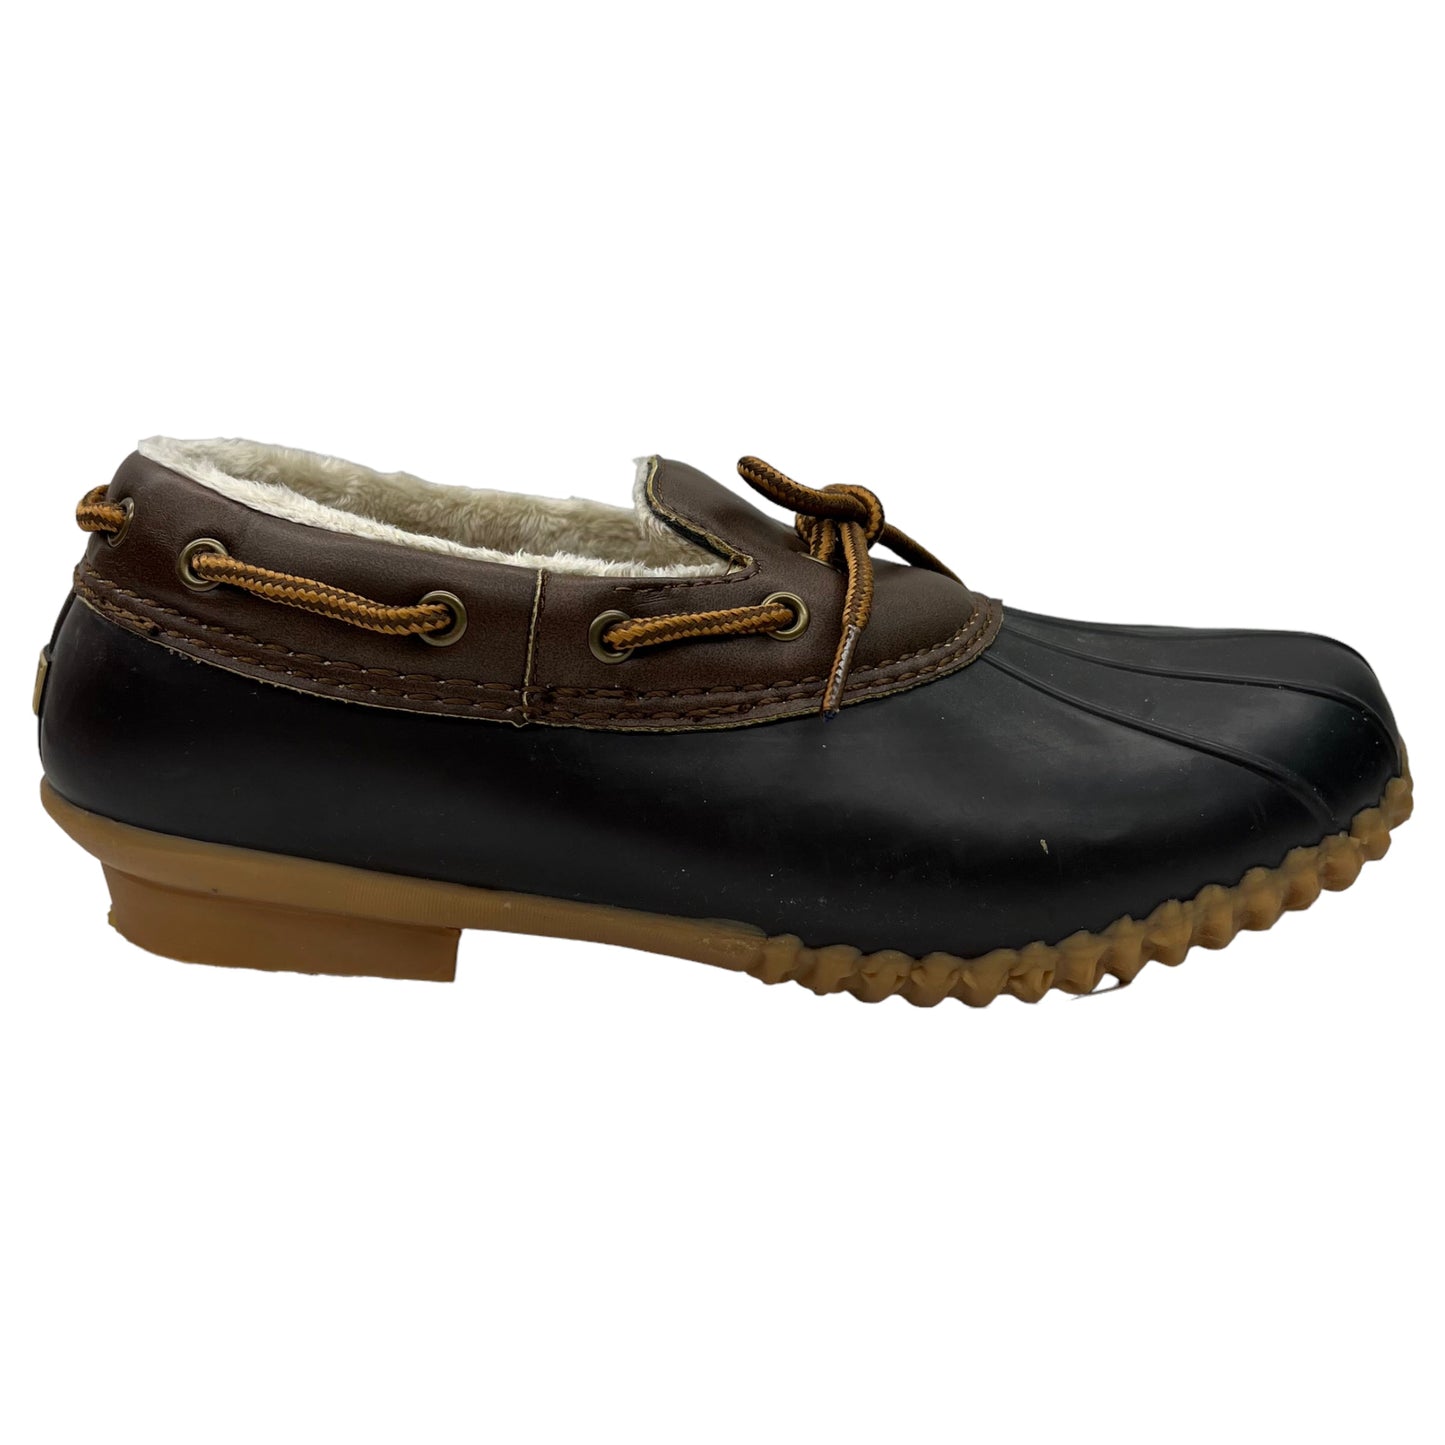 Shoes Flats Mule & Slide By Jambu  Size: 8